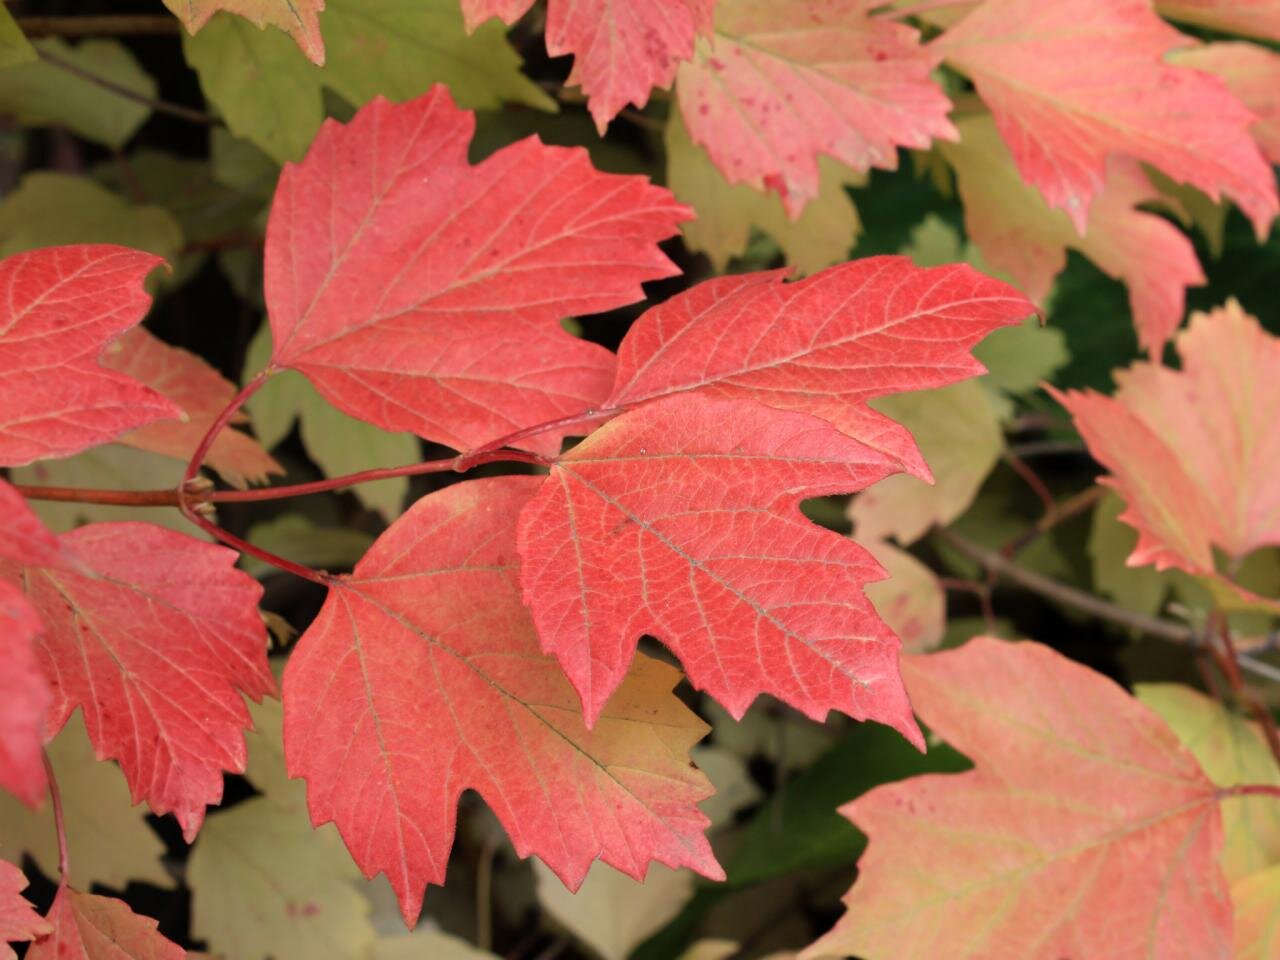 maple leaf virburnum fall color.jpeg